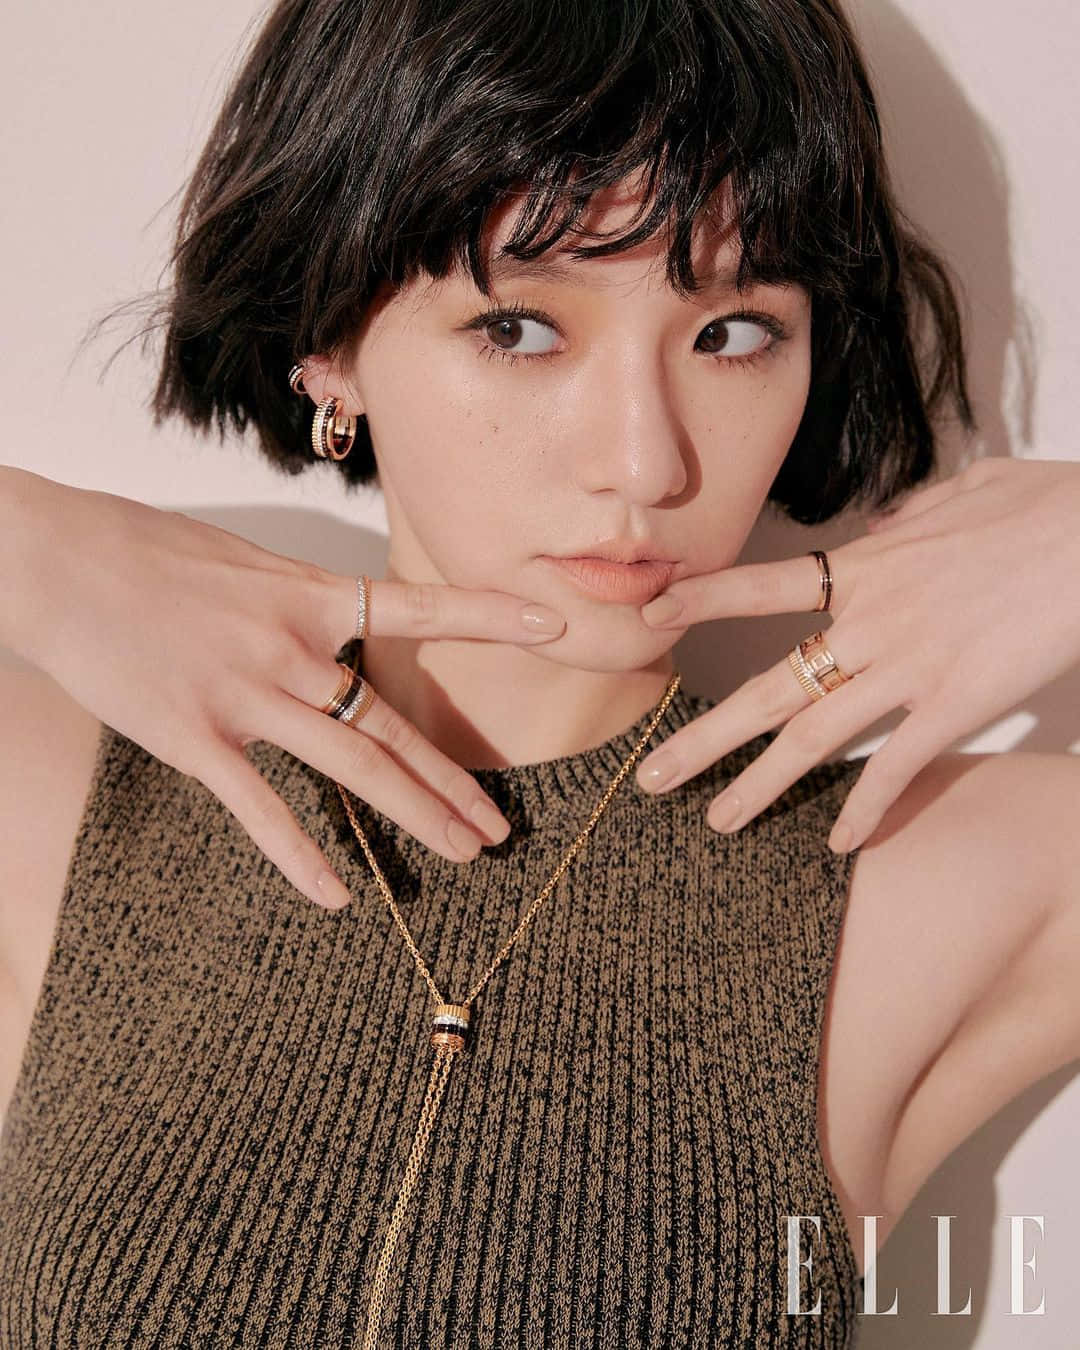 Parkgyu Young Schlägt Eine Stilvolle Pose Wallpaper